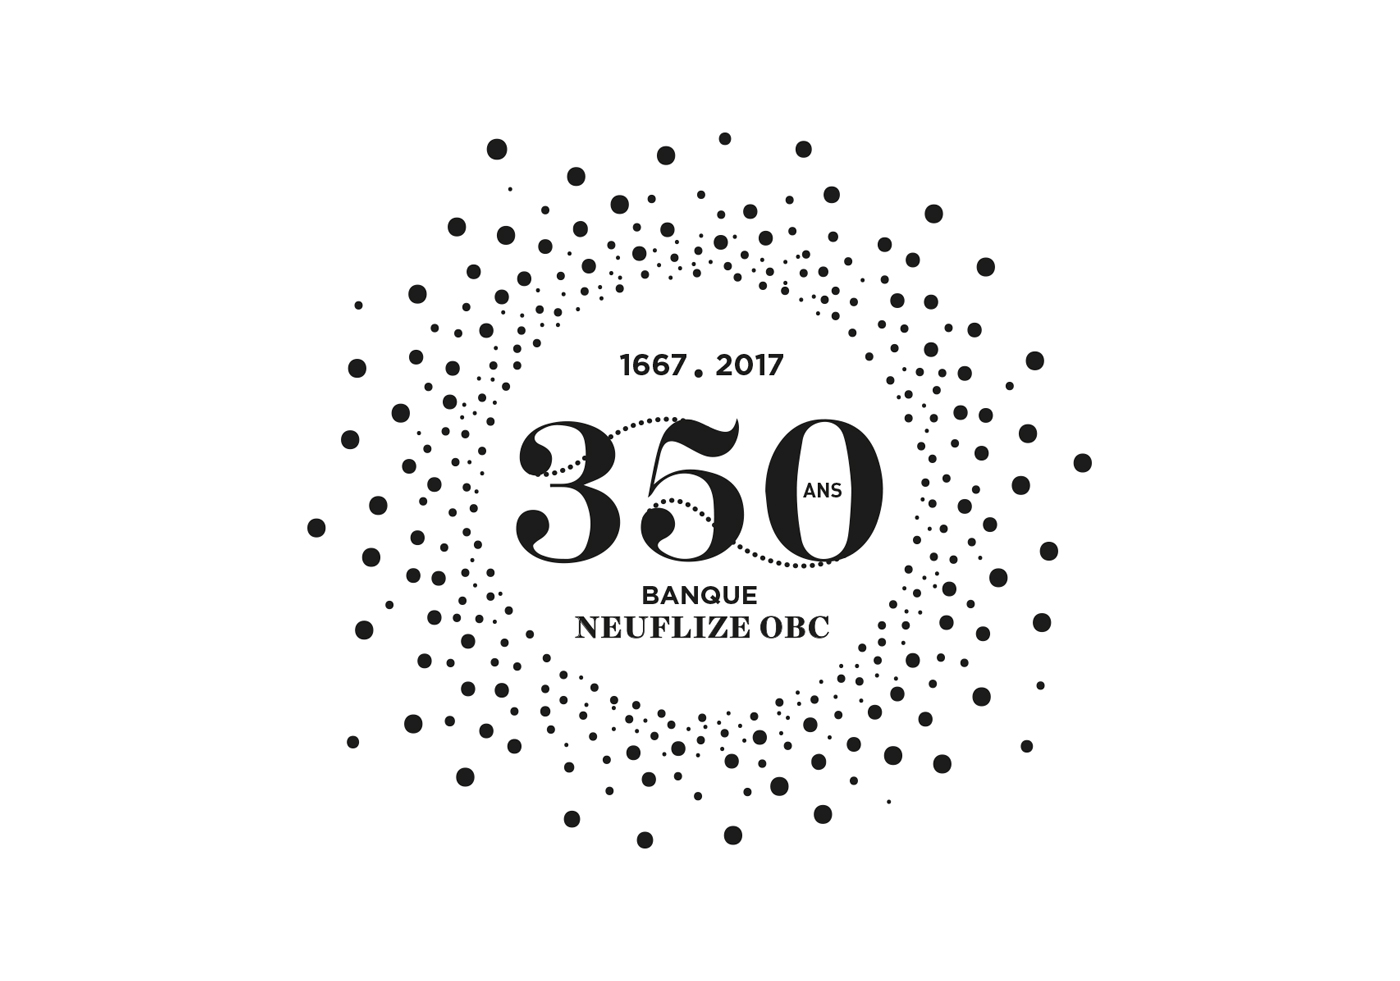 Neuflize OBC 350 ans - Un design pensé par l’agence de design de Paris Partisan du Sens.